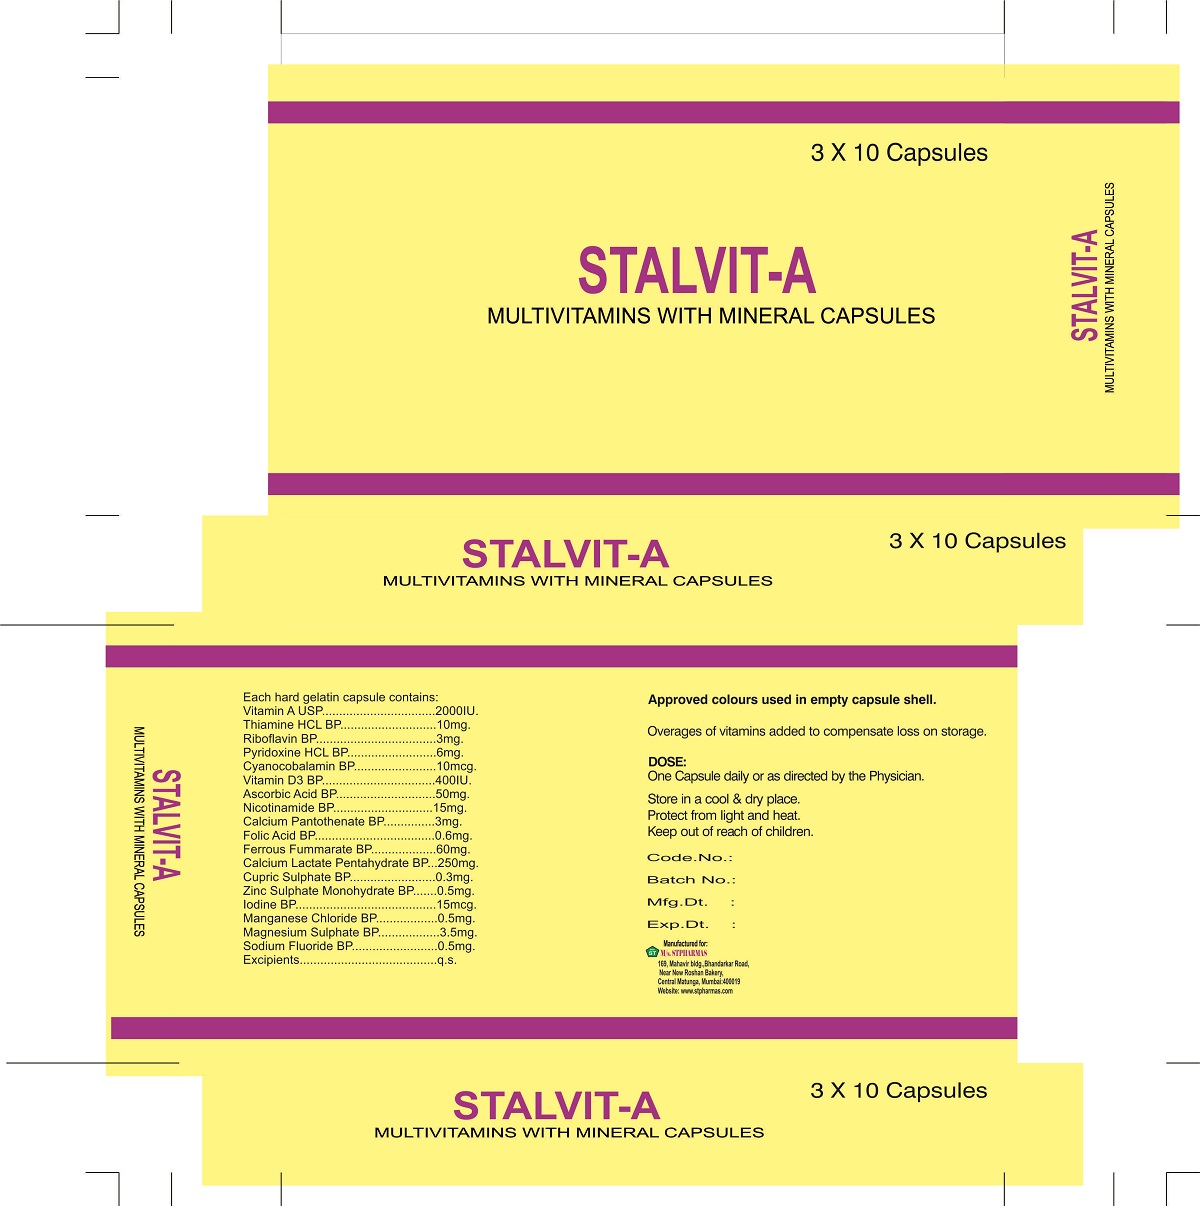 STALVIT-A